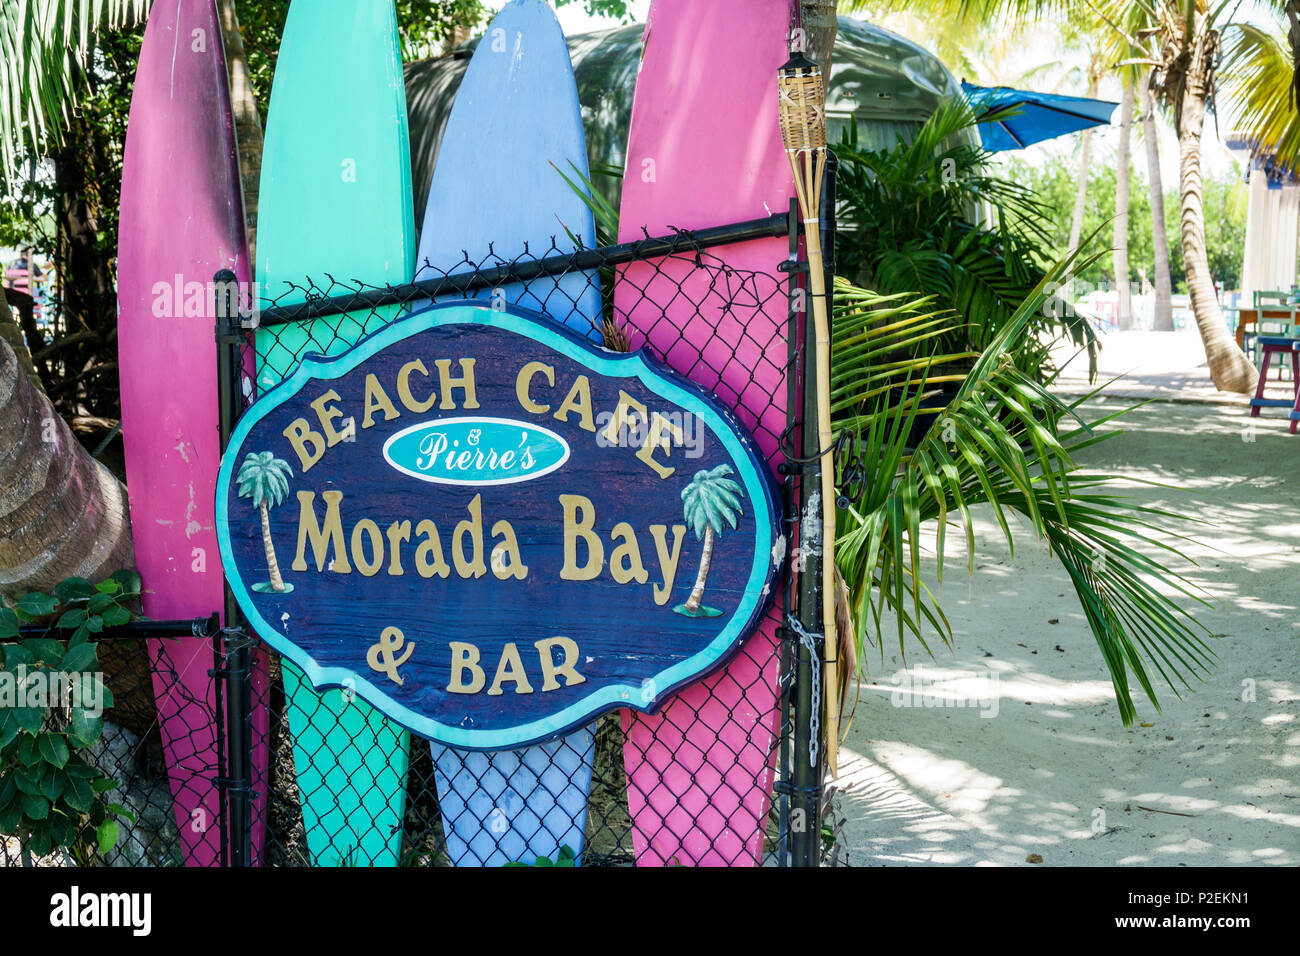 Florida Upper Florida Keys,Islamorada,Pierre's Beach Cafe & Bar Morada Bay,restaurante restaurantes comida comedor cafés,entrada,tablas de surf,signo,FL17 Foto de stock